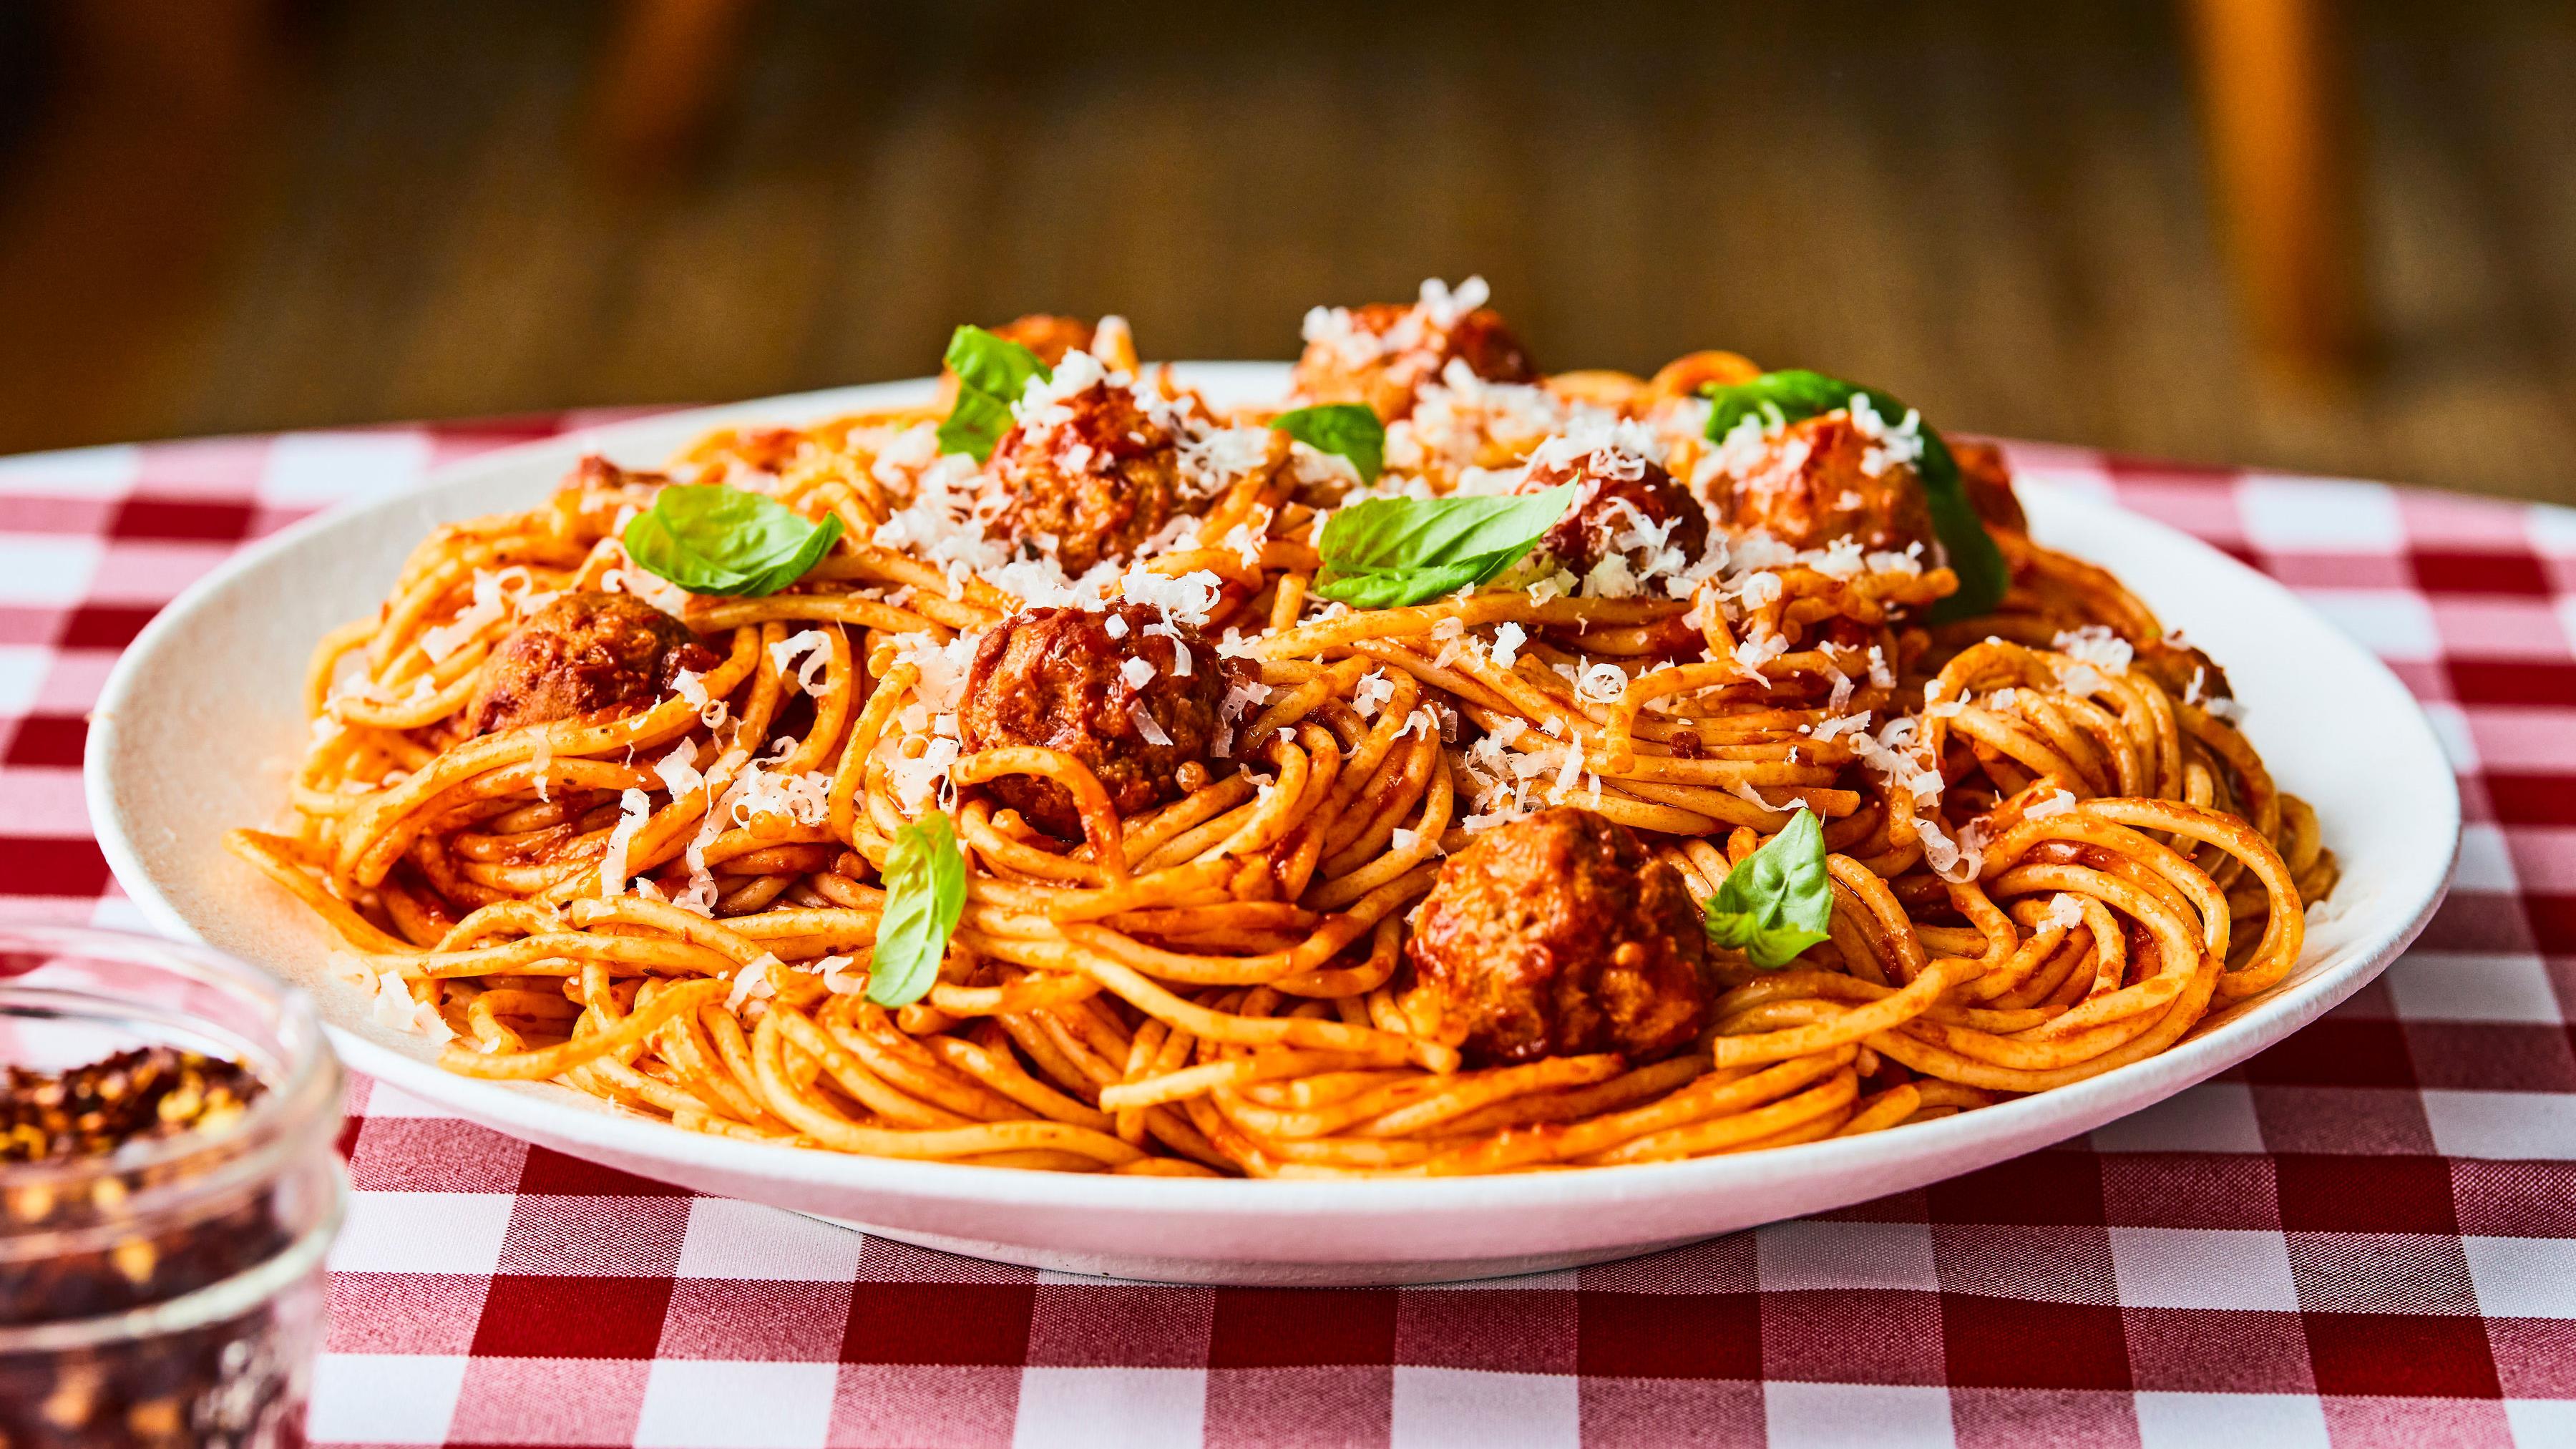 Spaghetti avec tomates au four et boulettes de viande